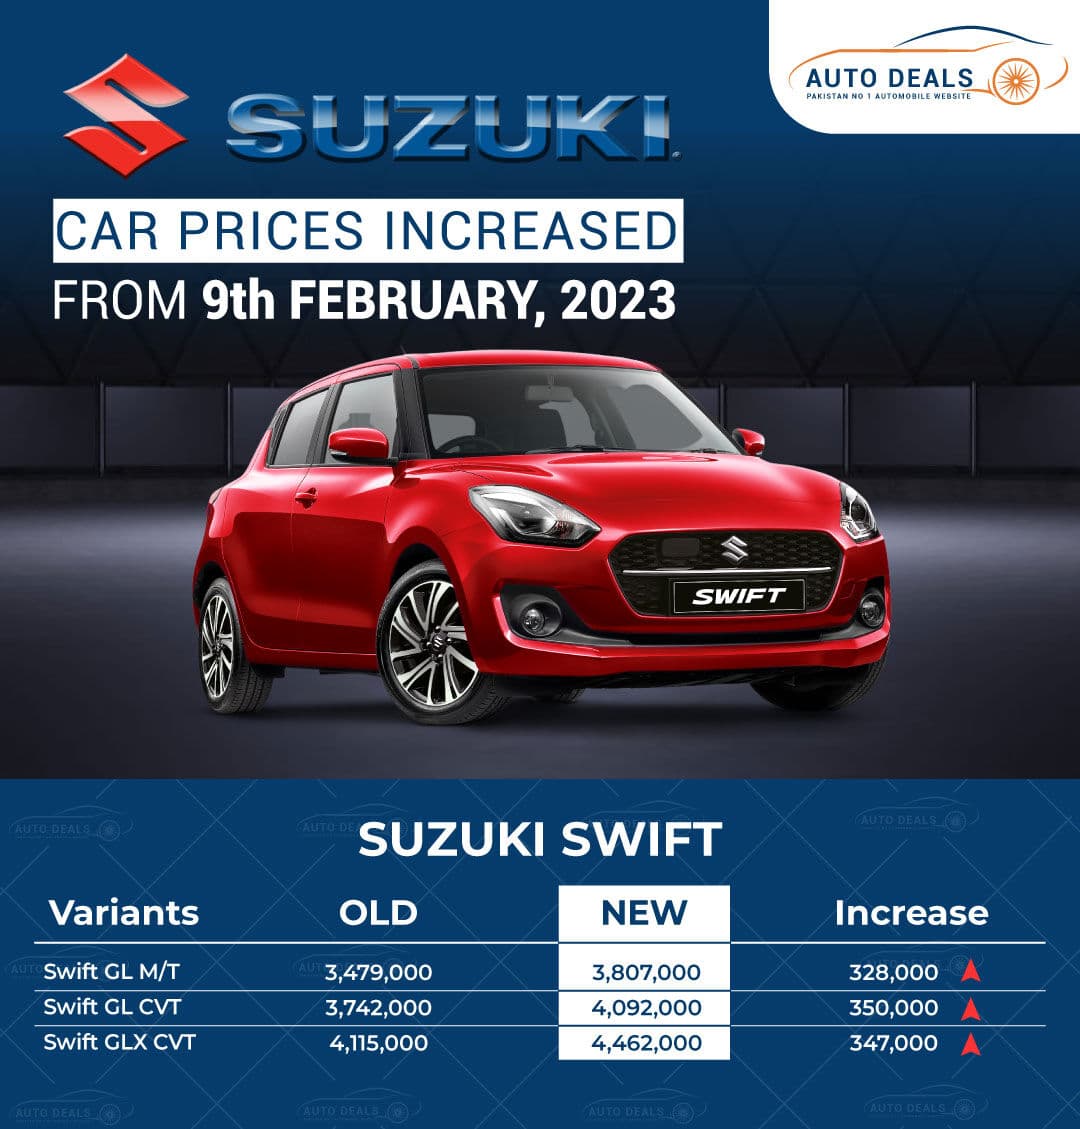 Suzuki Swift New Prices 2023